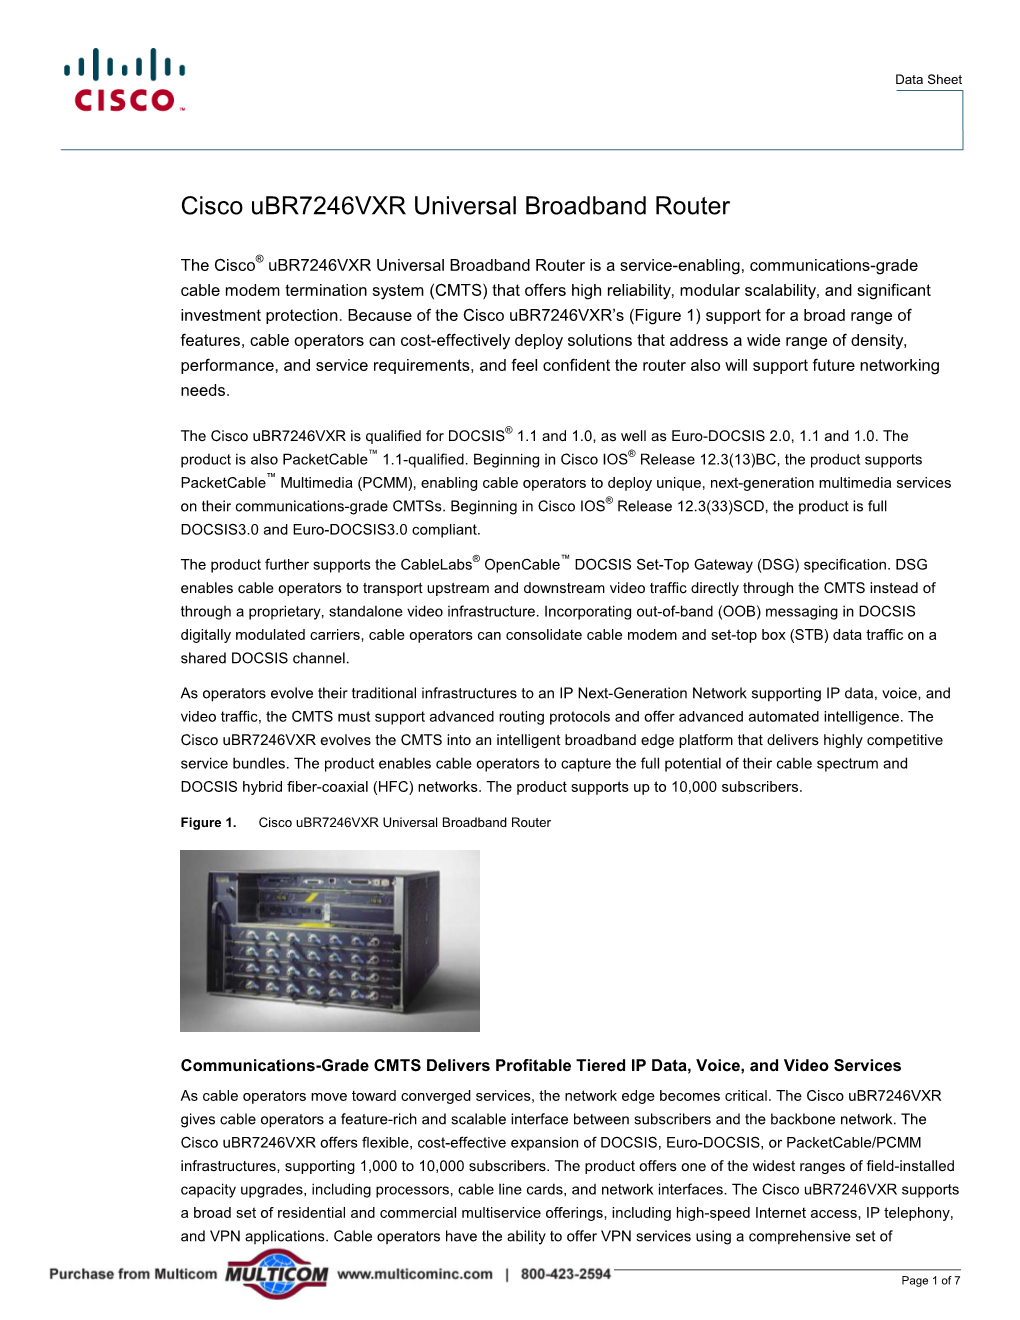 Cisco Ubr7246vxr Universal Broadband Router